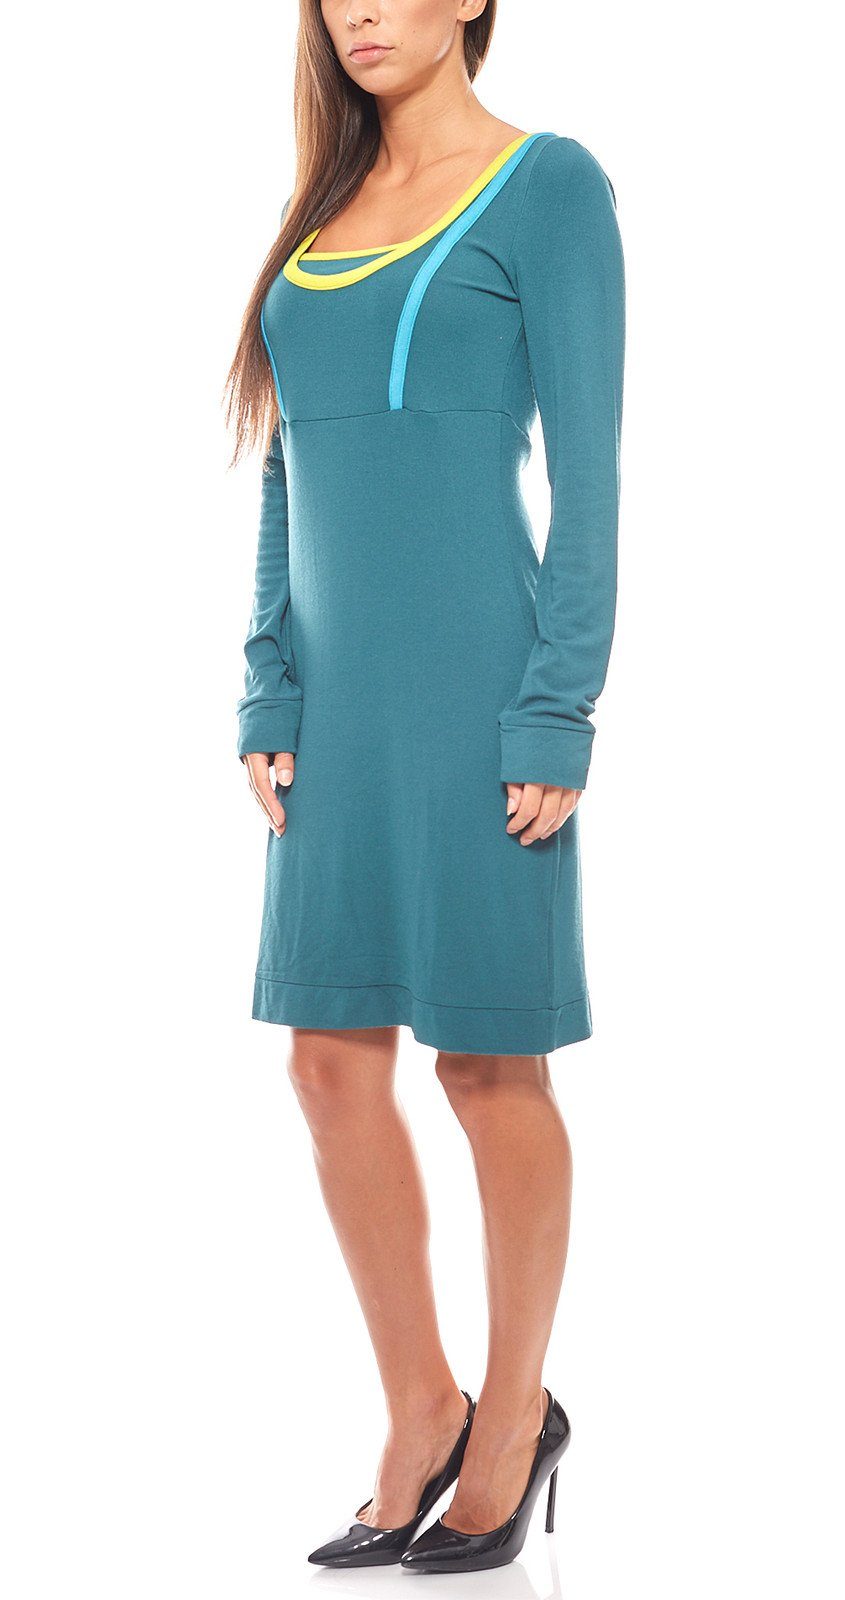 VACUUM Jerseykleid Kleid sportliches Mini Jerseykleid lange Ärmel Grün vacuum